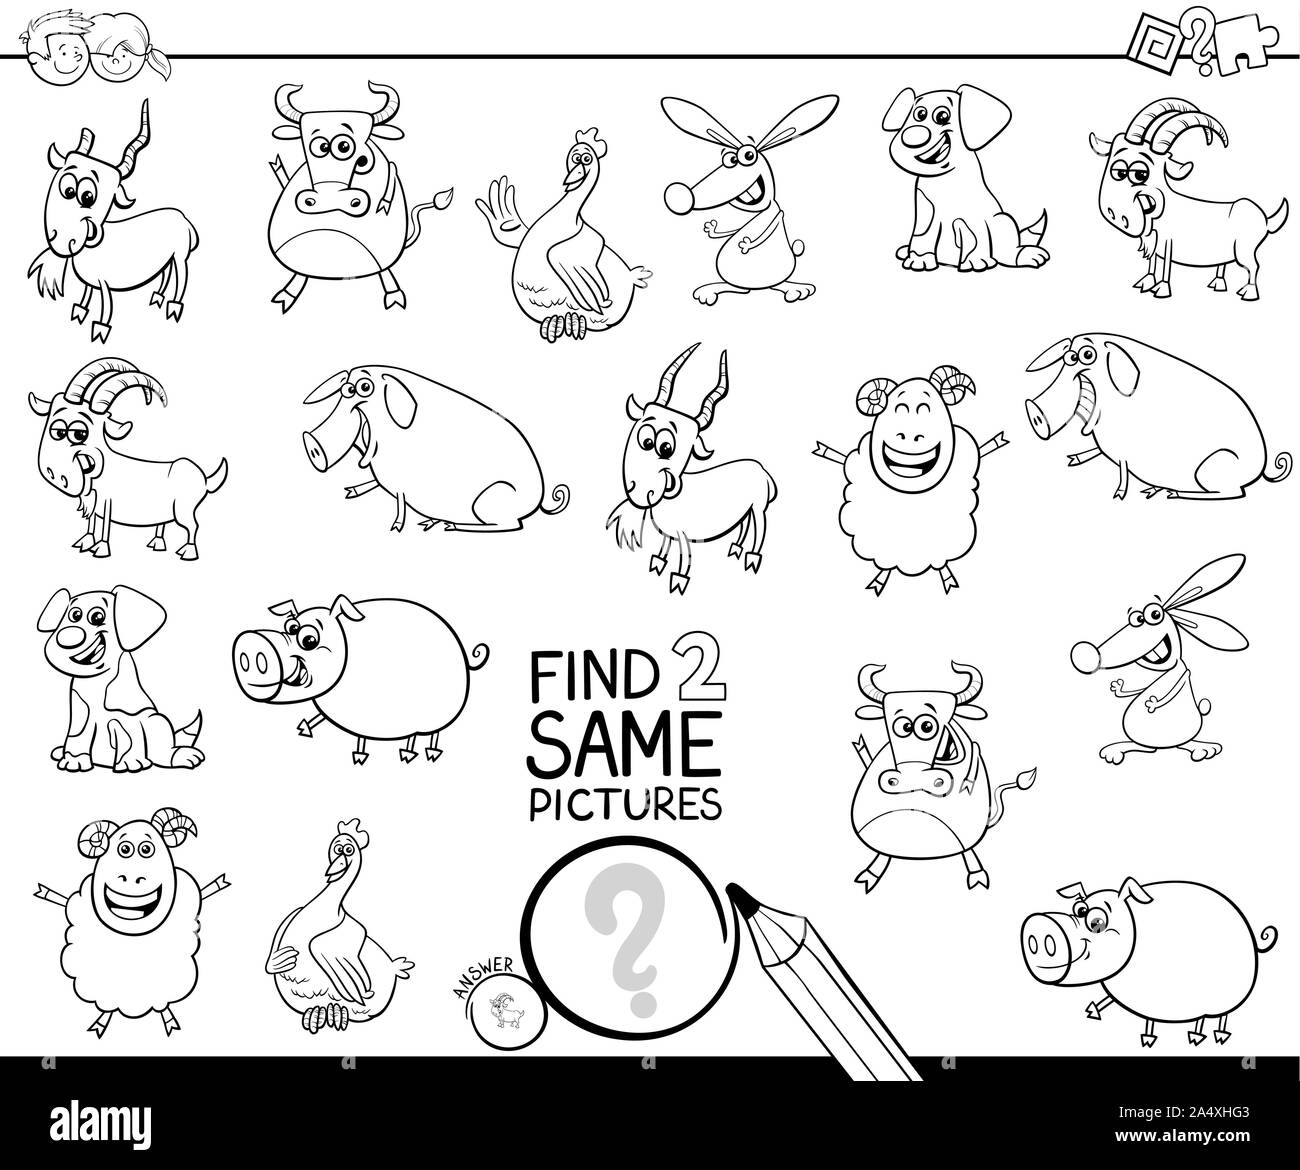 Cartoon noir et blanc Illustration de trouver deux mêmes images Jeu d'activités éducatives pour les enfants avec des animaux de ferme à colorier Personnages Illustration de Vecteur